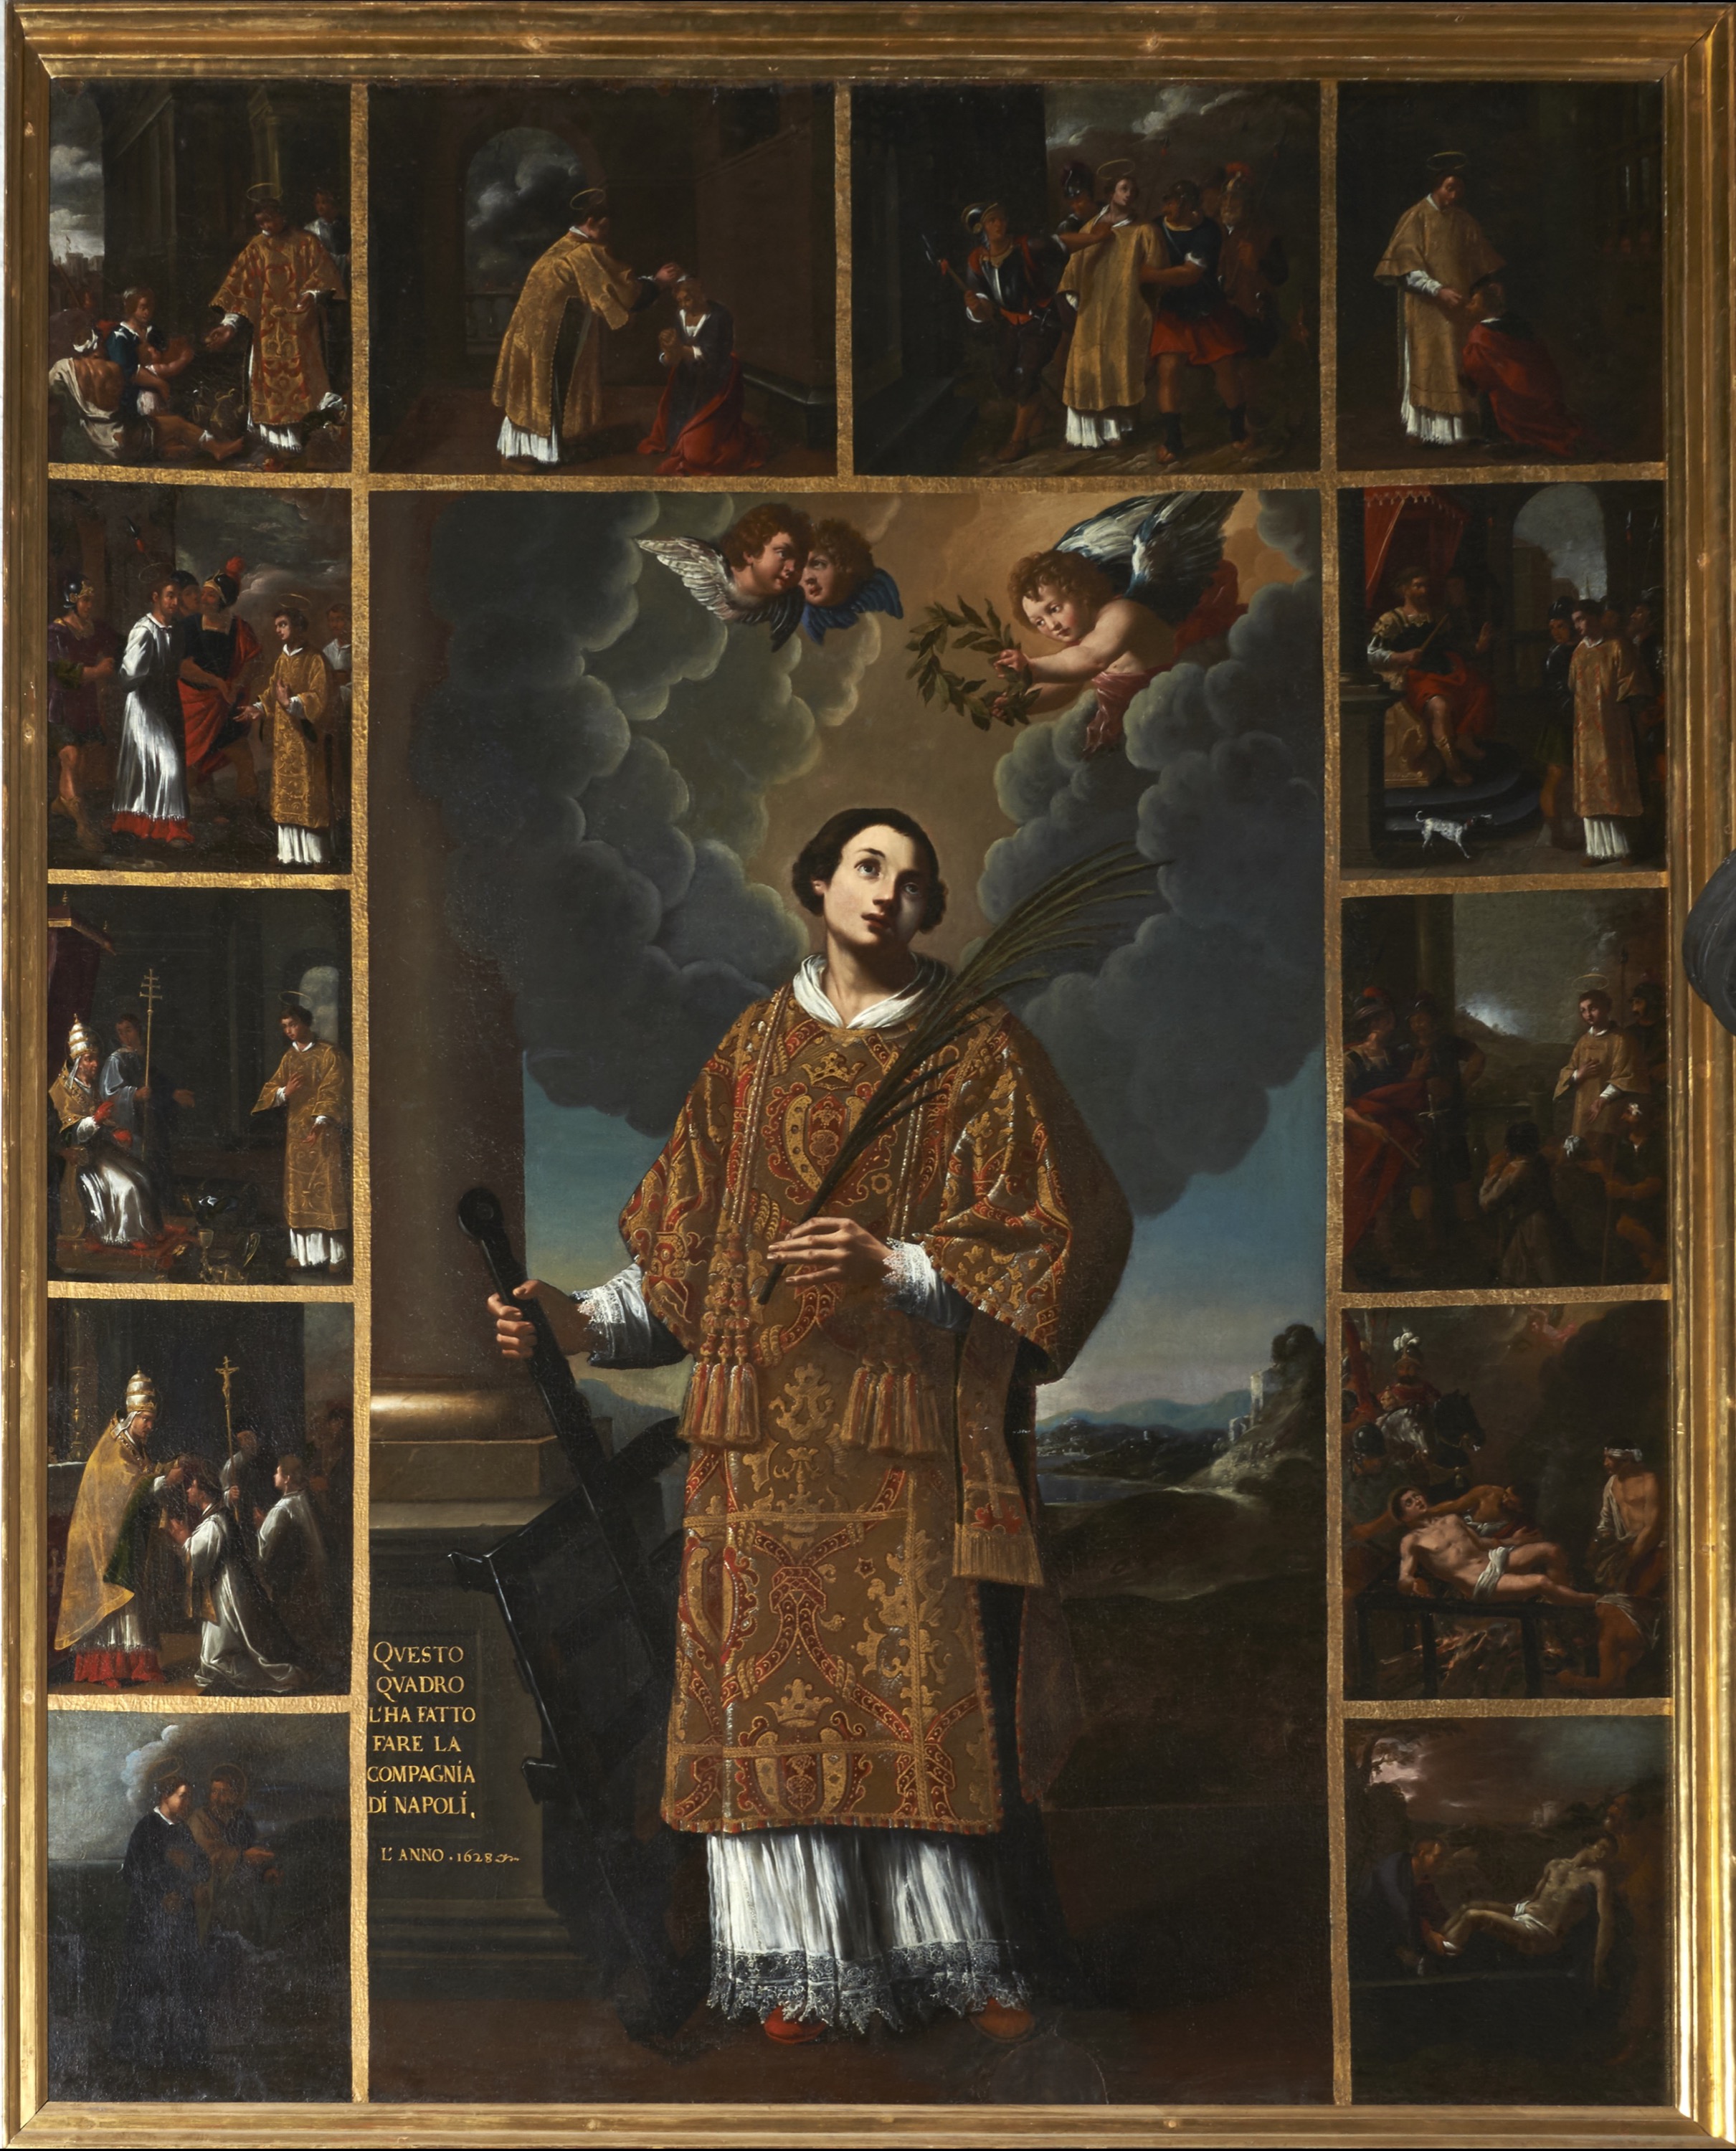 Fig. 25 Pittore napoletano, San Lorenzo e storie della sua vita, 1628. Sacco, San Lorenzo